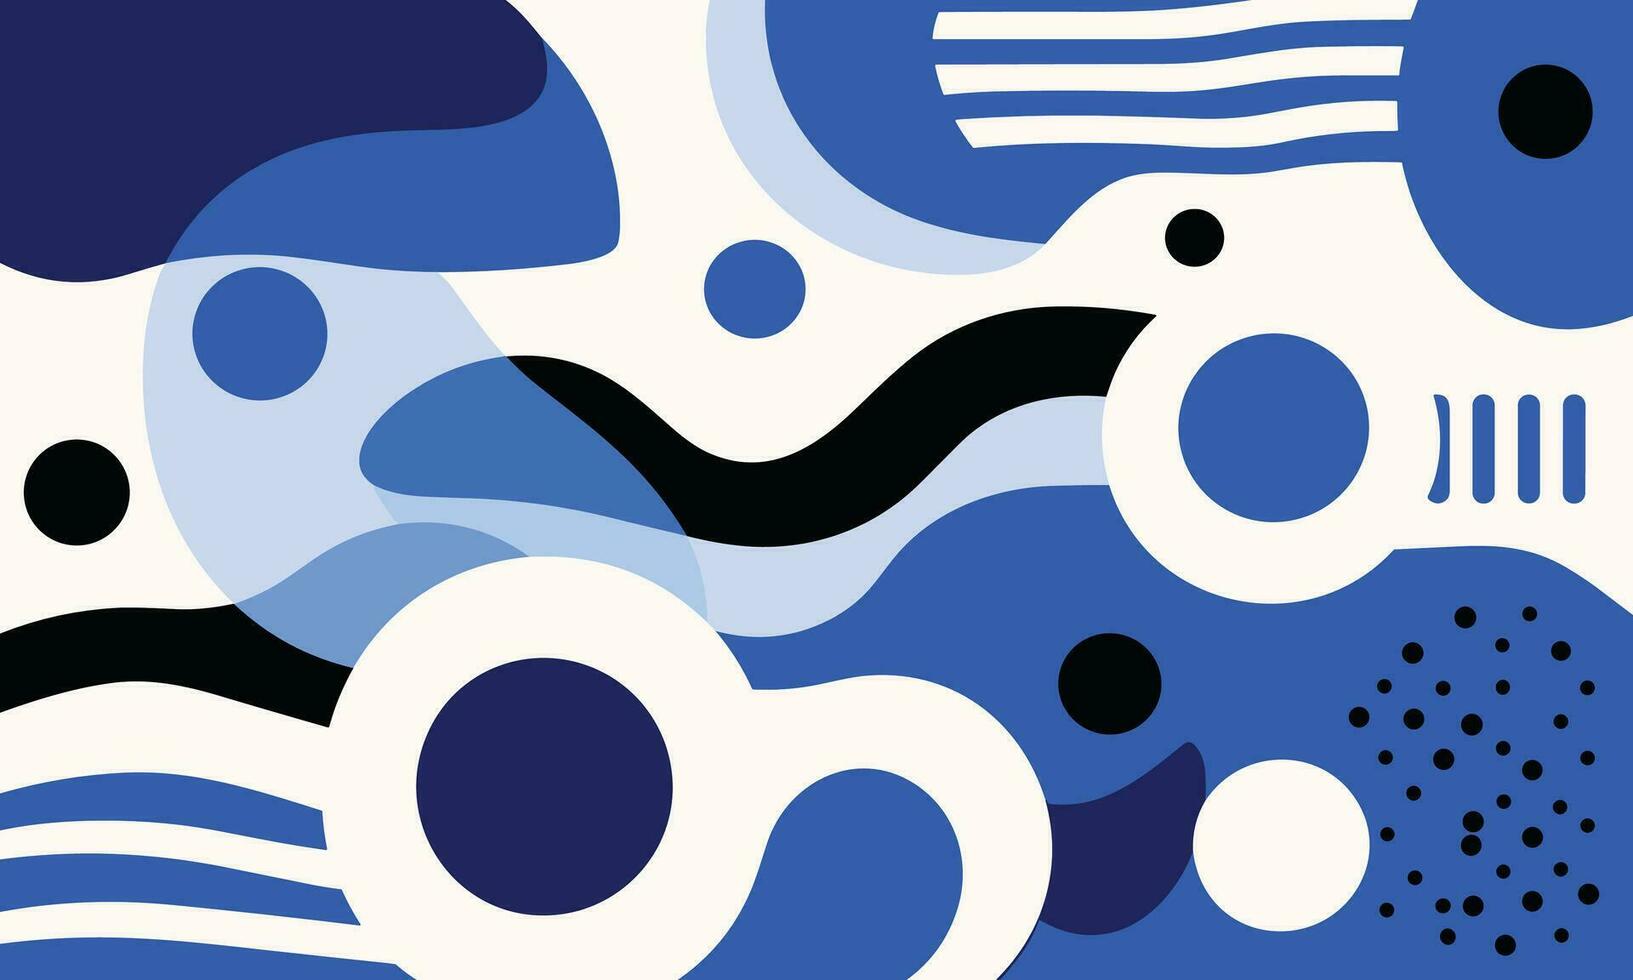 abstract achtergrond met vormen en abstract achtergrond vector, in de stijl van wit en marine, abstractie-creatie, blauw en zwart, strepen en vormen, Memphis ontwerp, afgeronde vormen vector